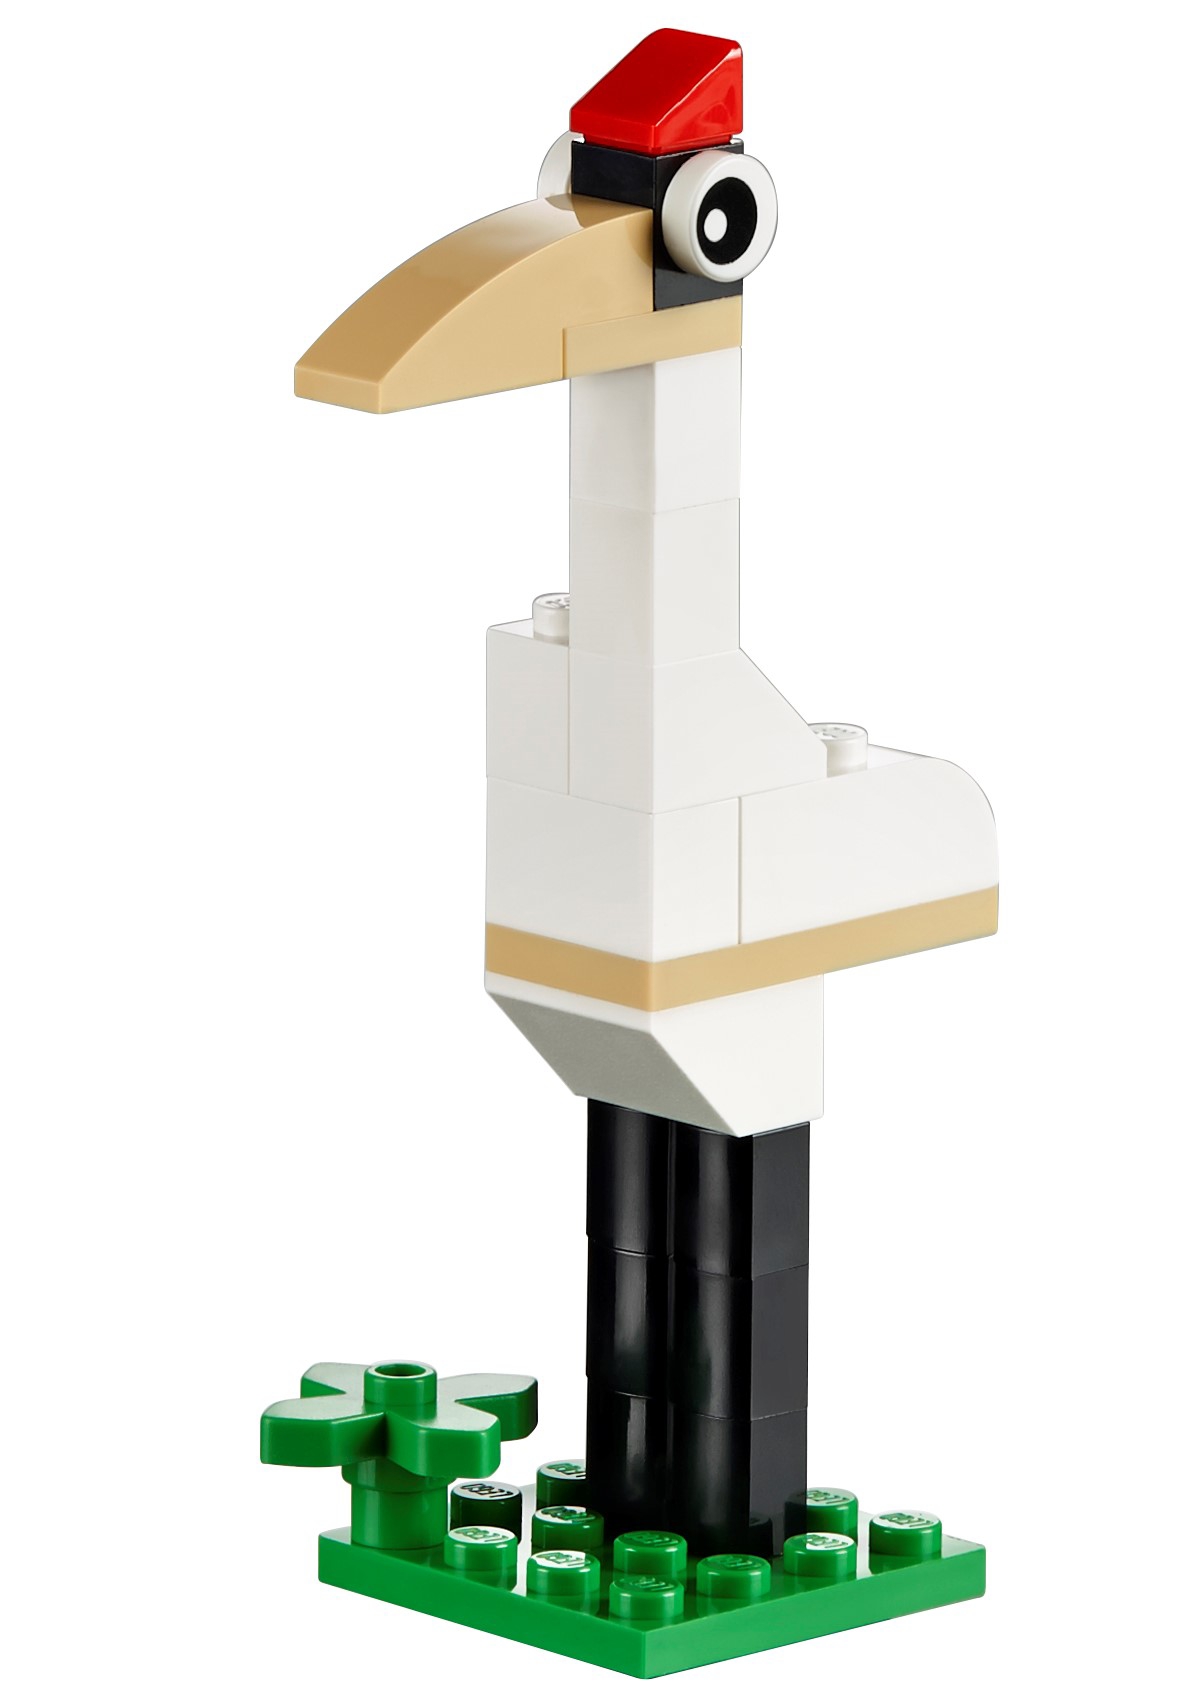 LEGO Classic bloques de construcción caja grande (10698) desde 37,99 €, Febrero 2024